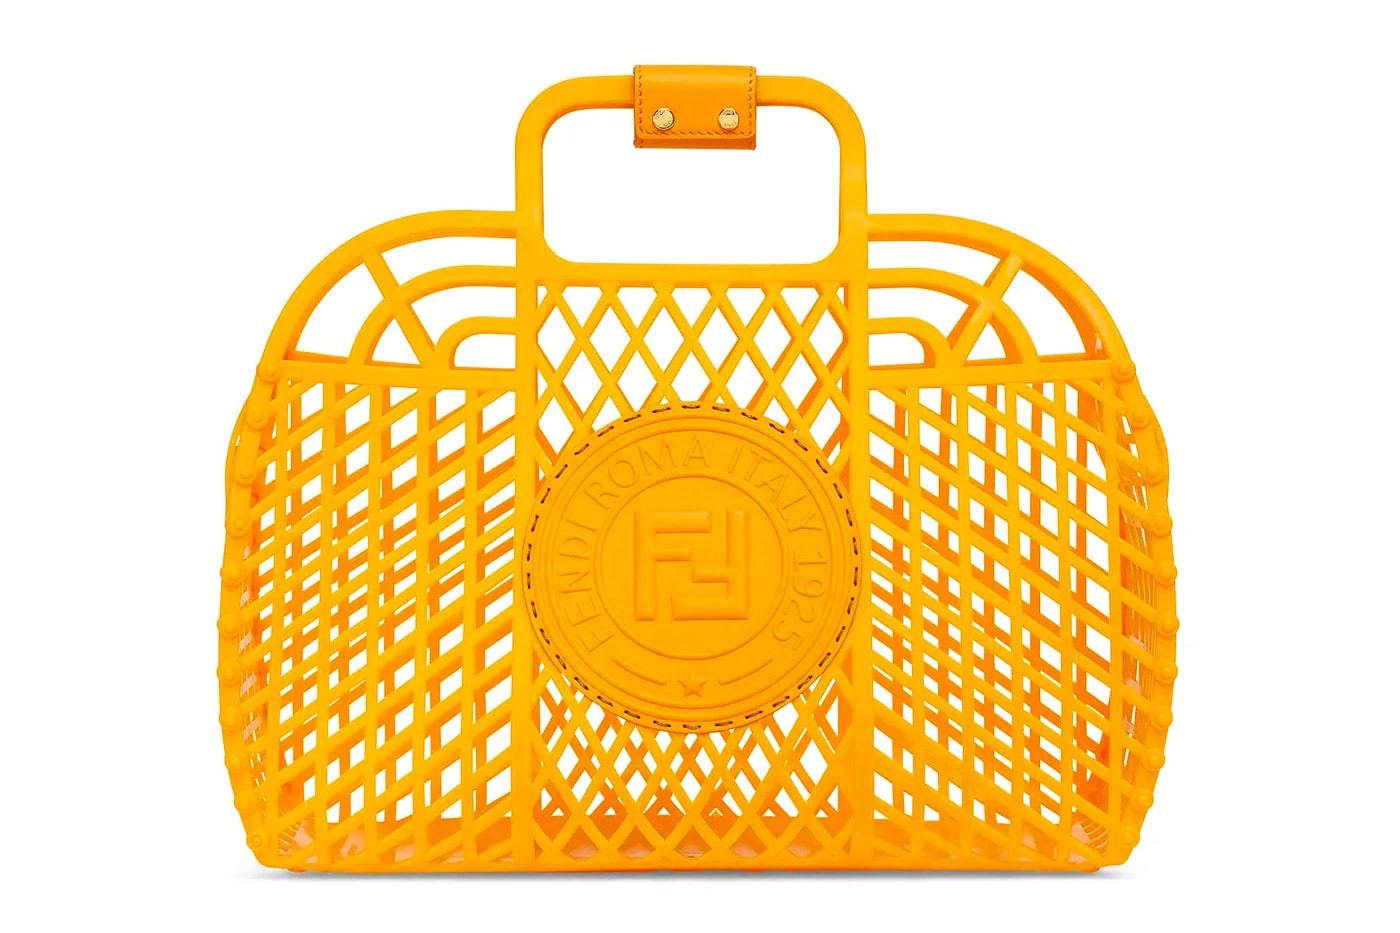 フェンディからラグジュアリーなプラスチック製バスケットバッグが登場 Fendi Recycled Plastic BASKET Handbag Release 1990s nostalgia shopping basket 